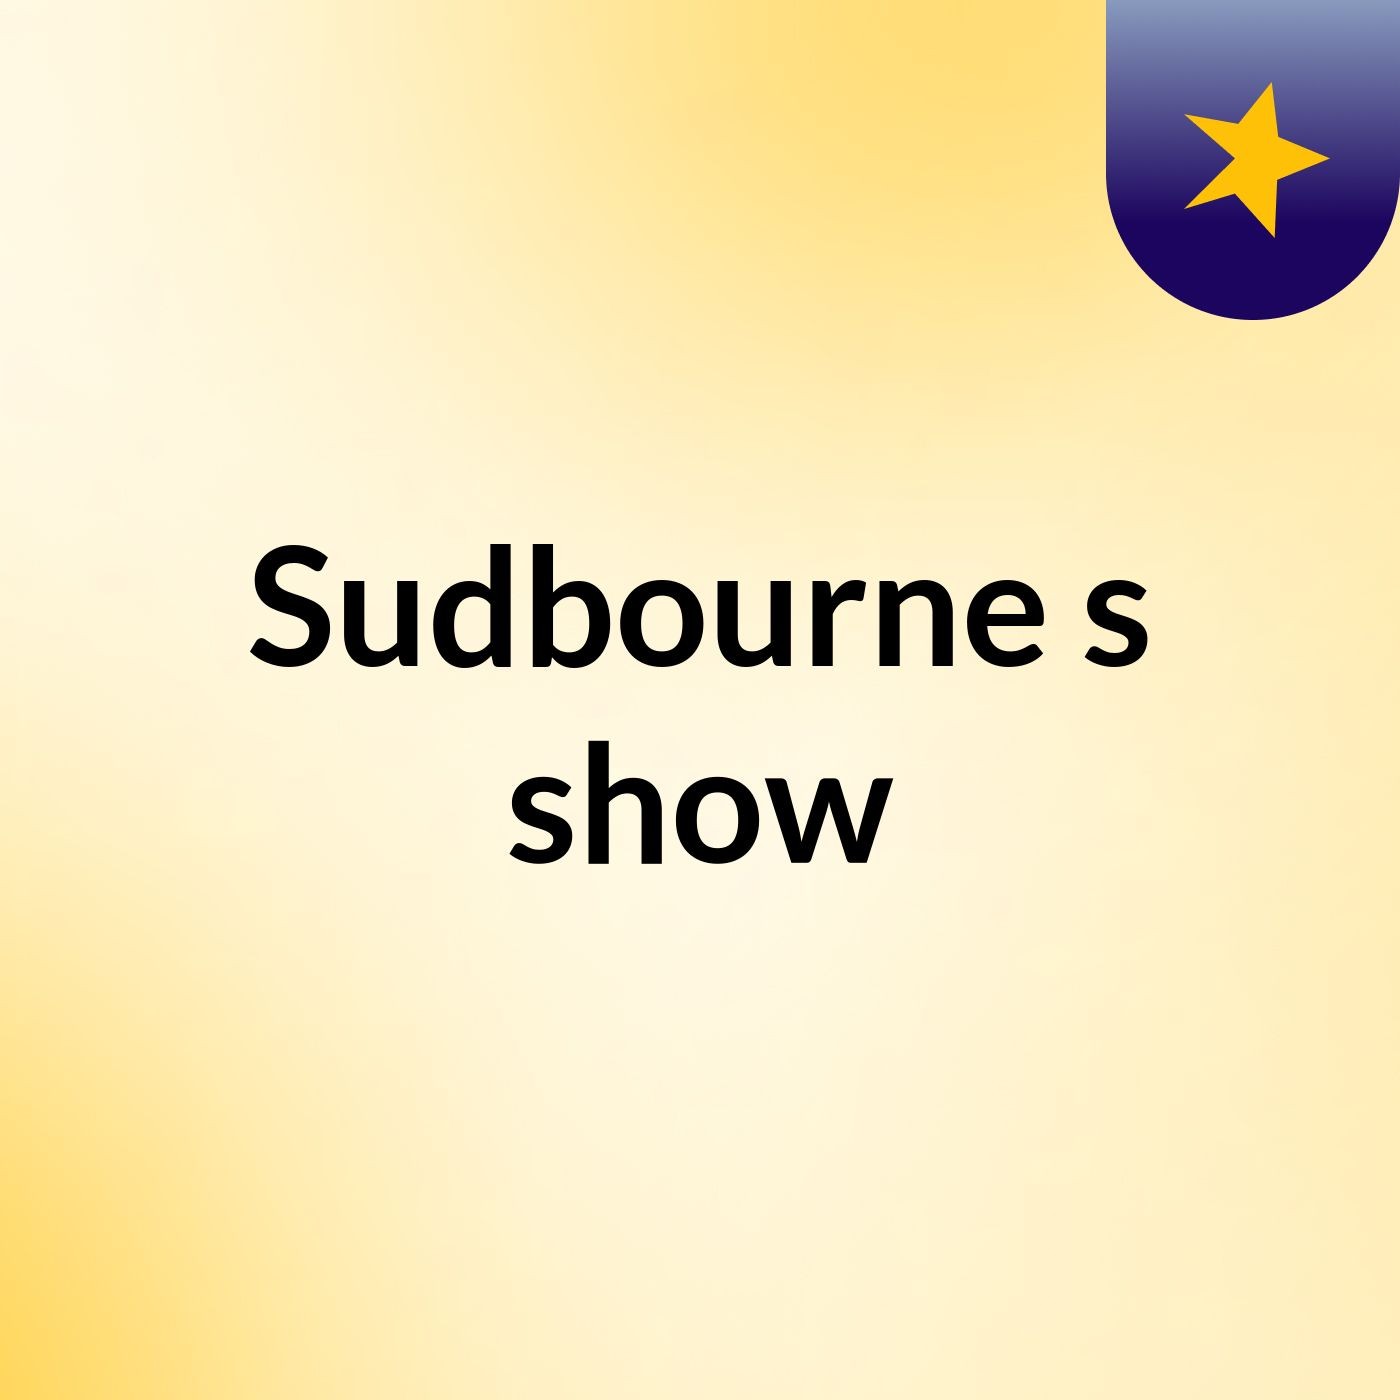 Sudbourne's show